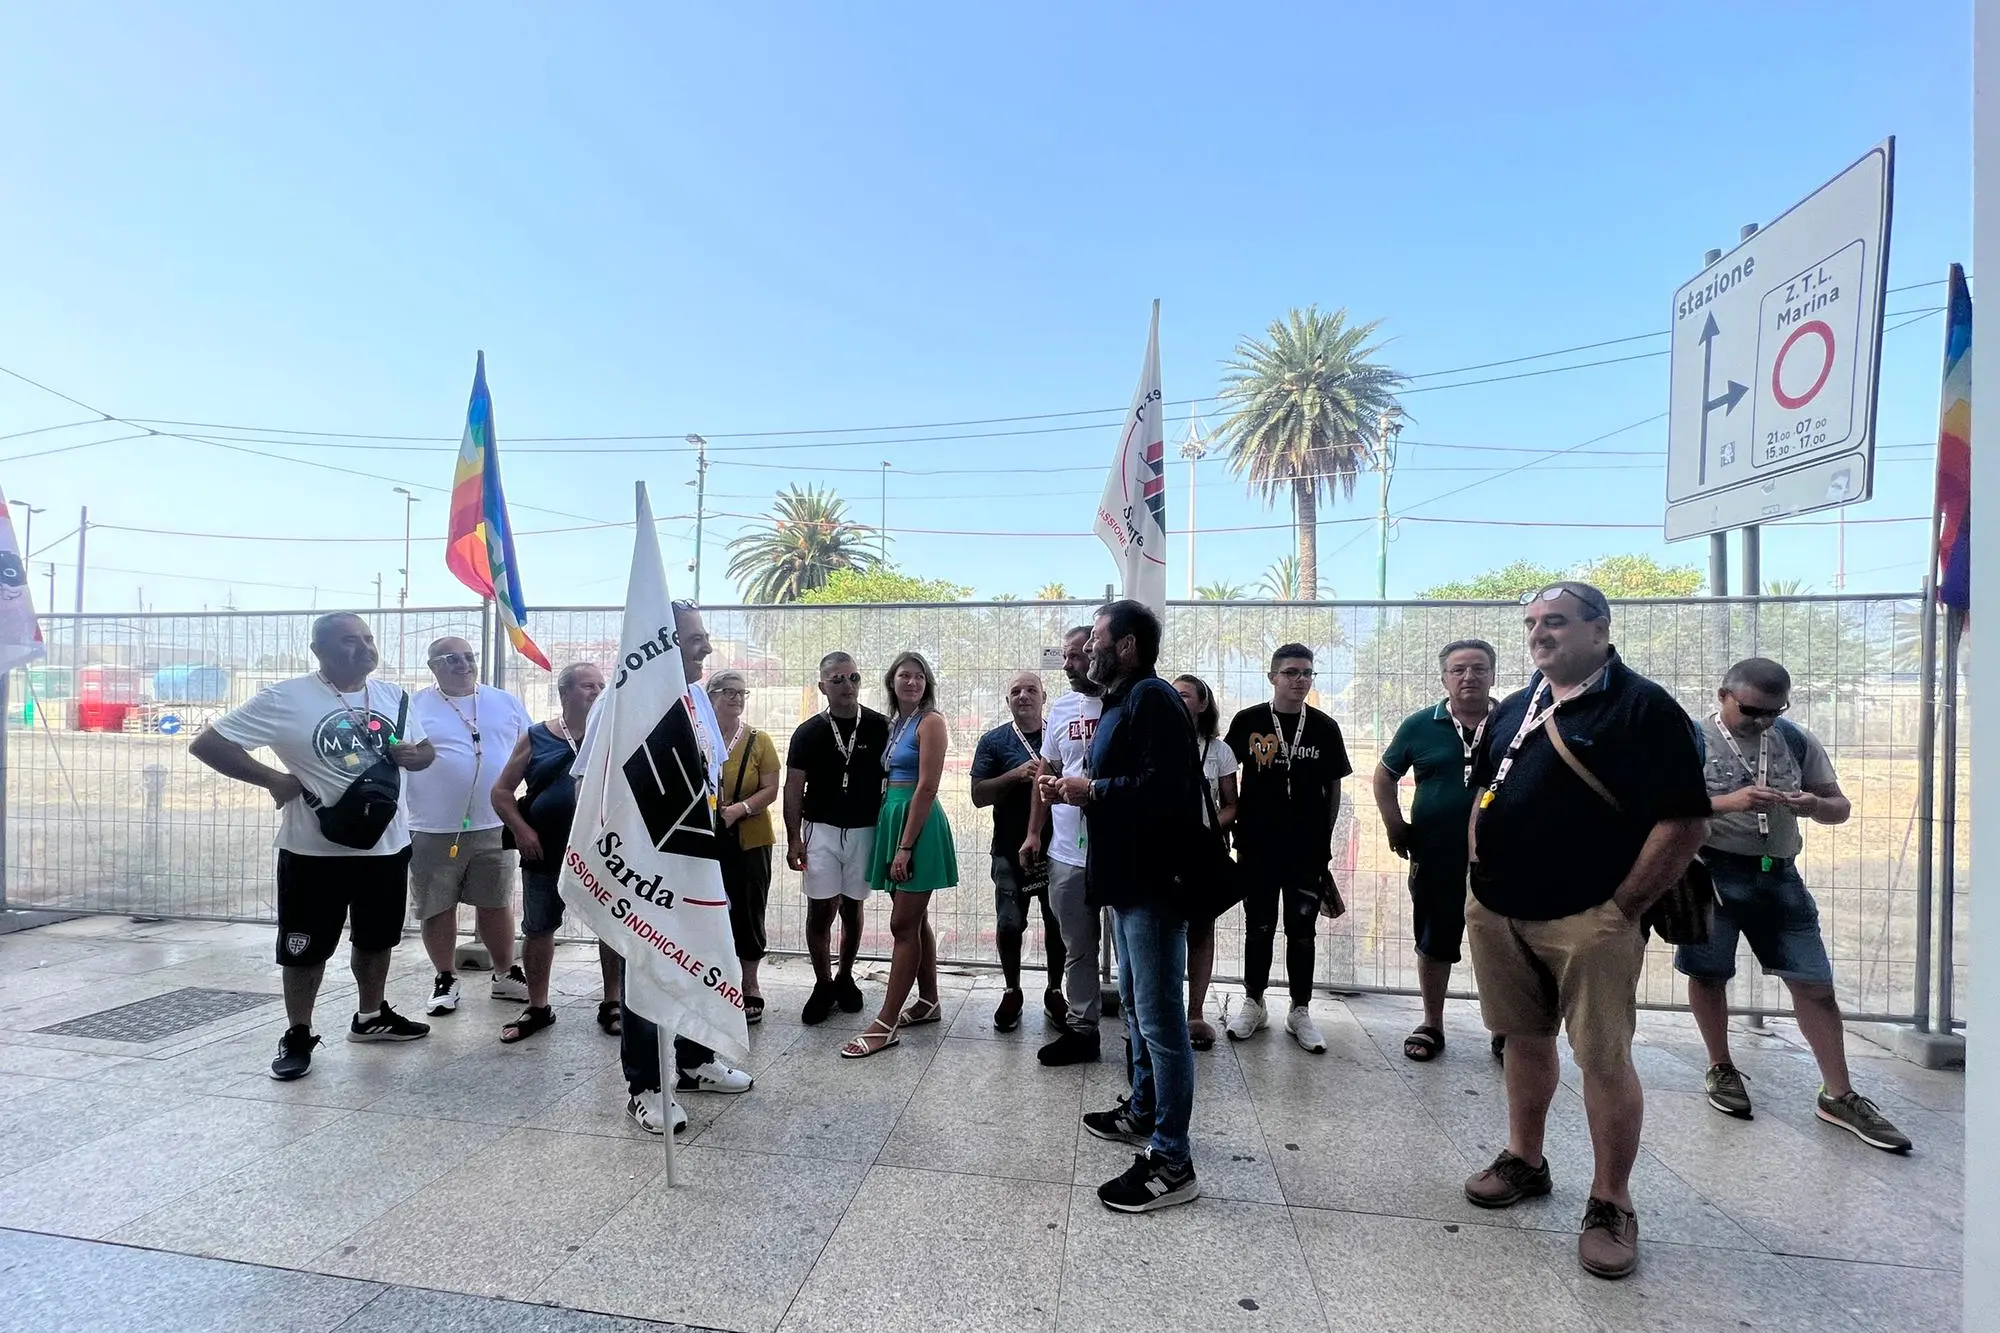 La protesta degli ambulanti a Cagliari (foto Melis)